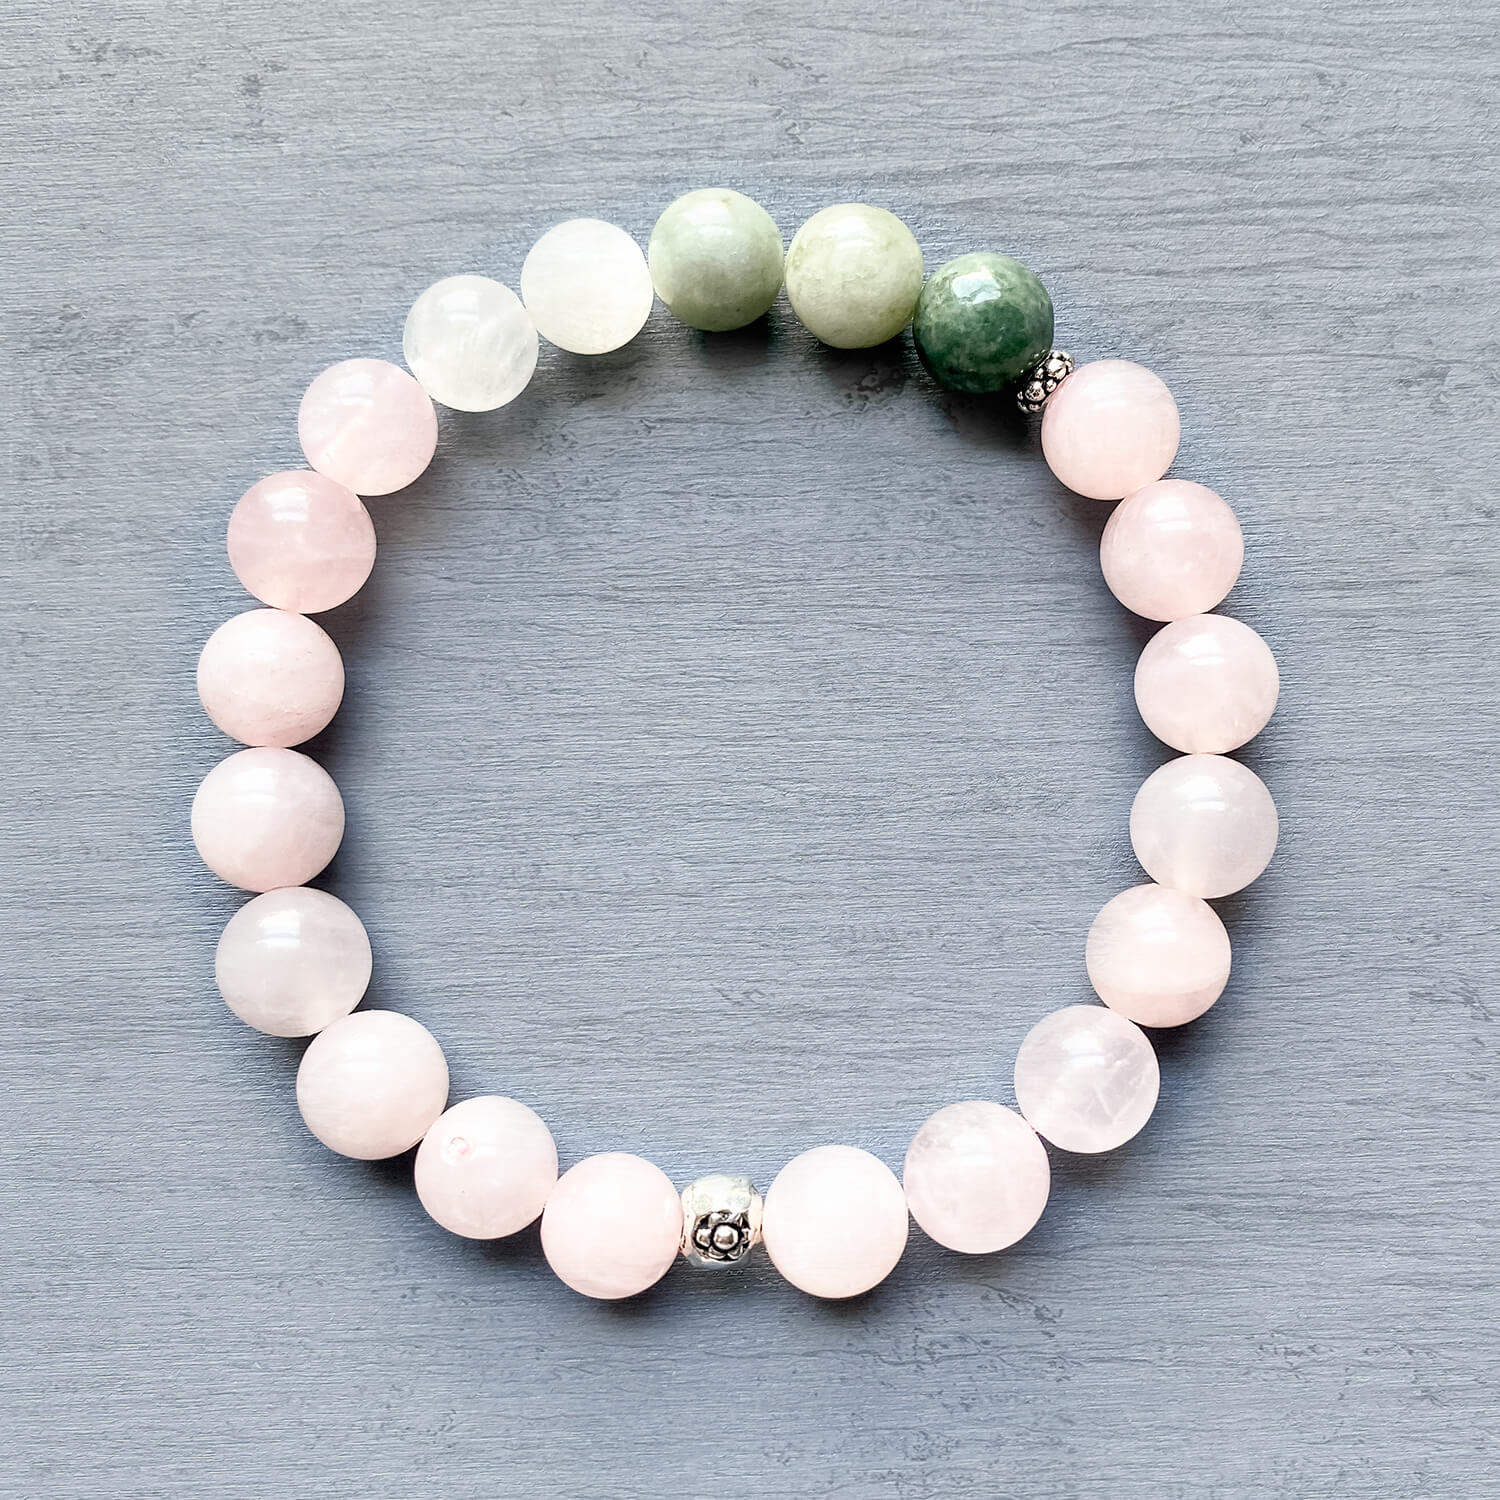 Inner Peace Bracelet - Rose Quartz, Jade, Selenite